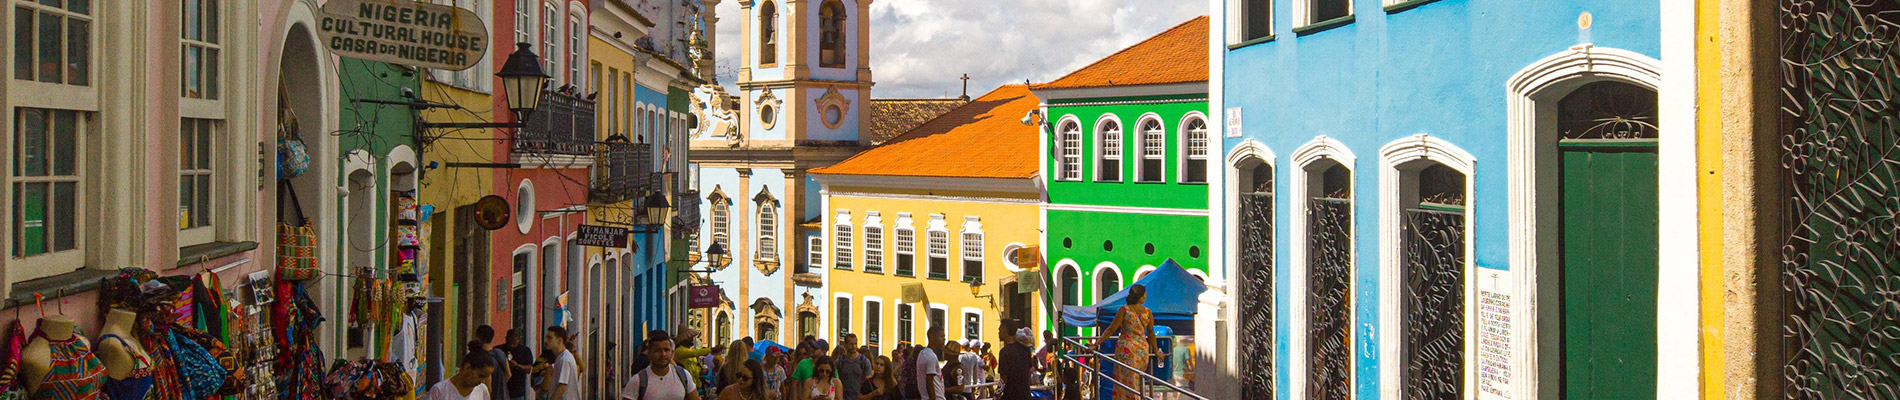 construções coloridas em rua de Salvador demonstrando o que fazer no Pelourinho